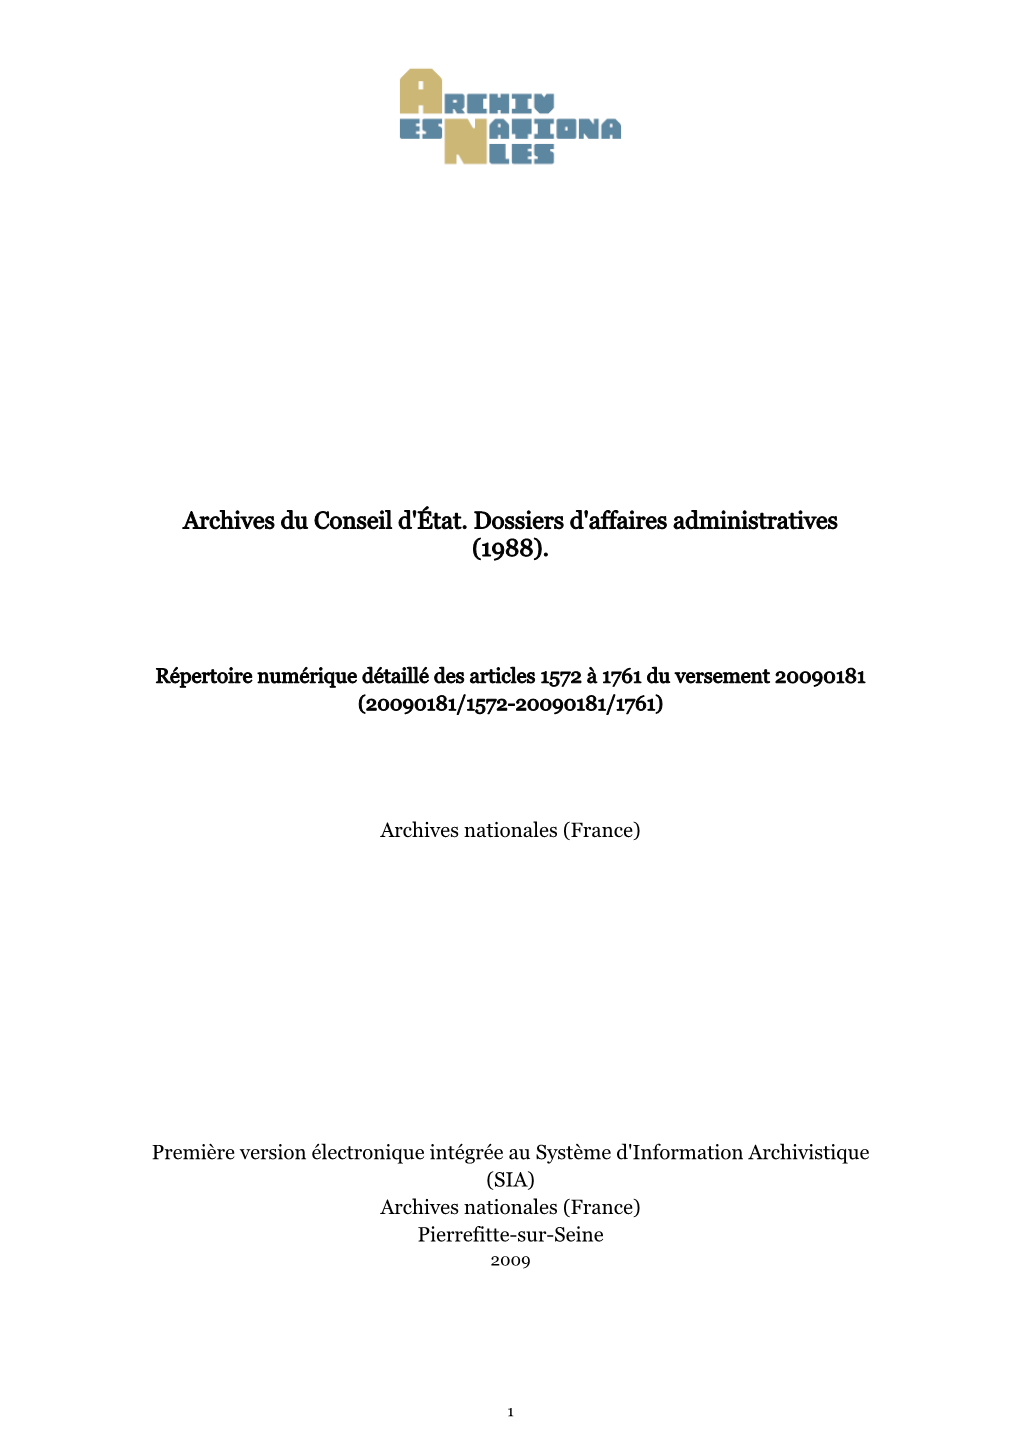 Archives Du Conseil D'état. Dossiers D'affaires Administratives (1988)